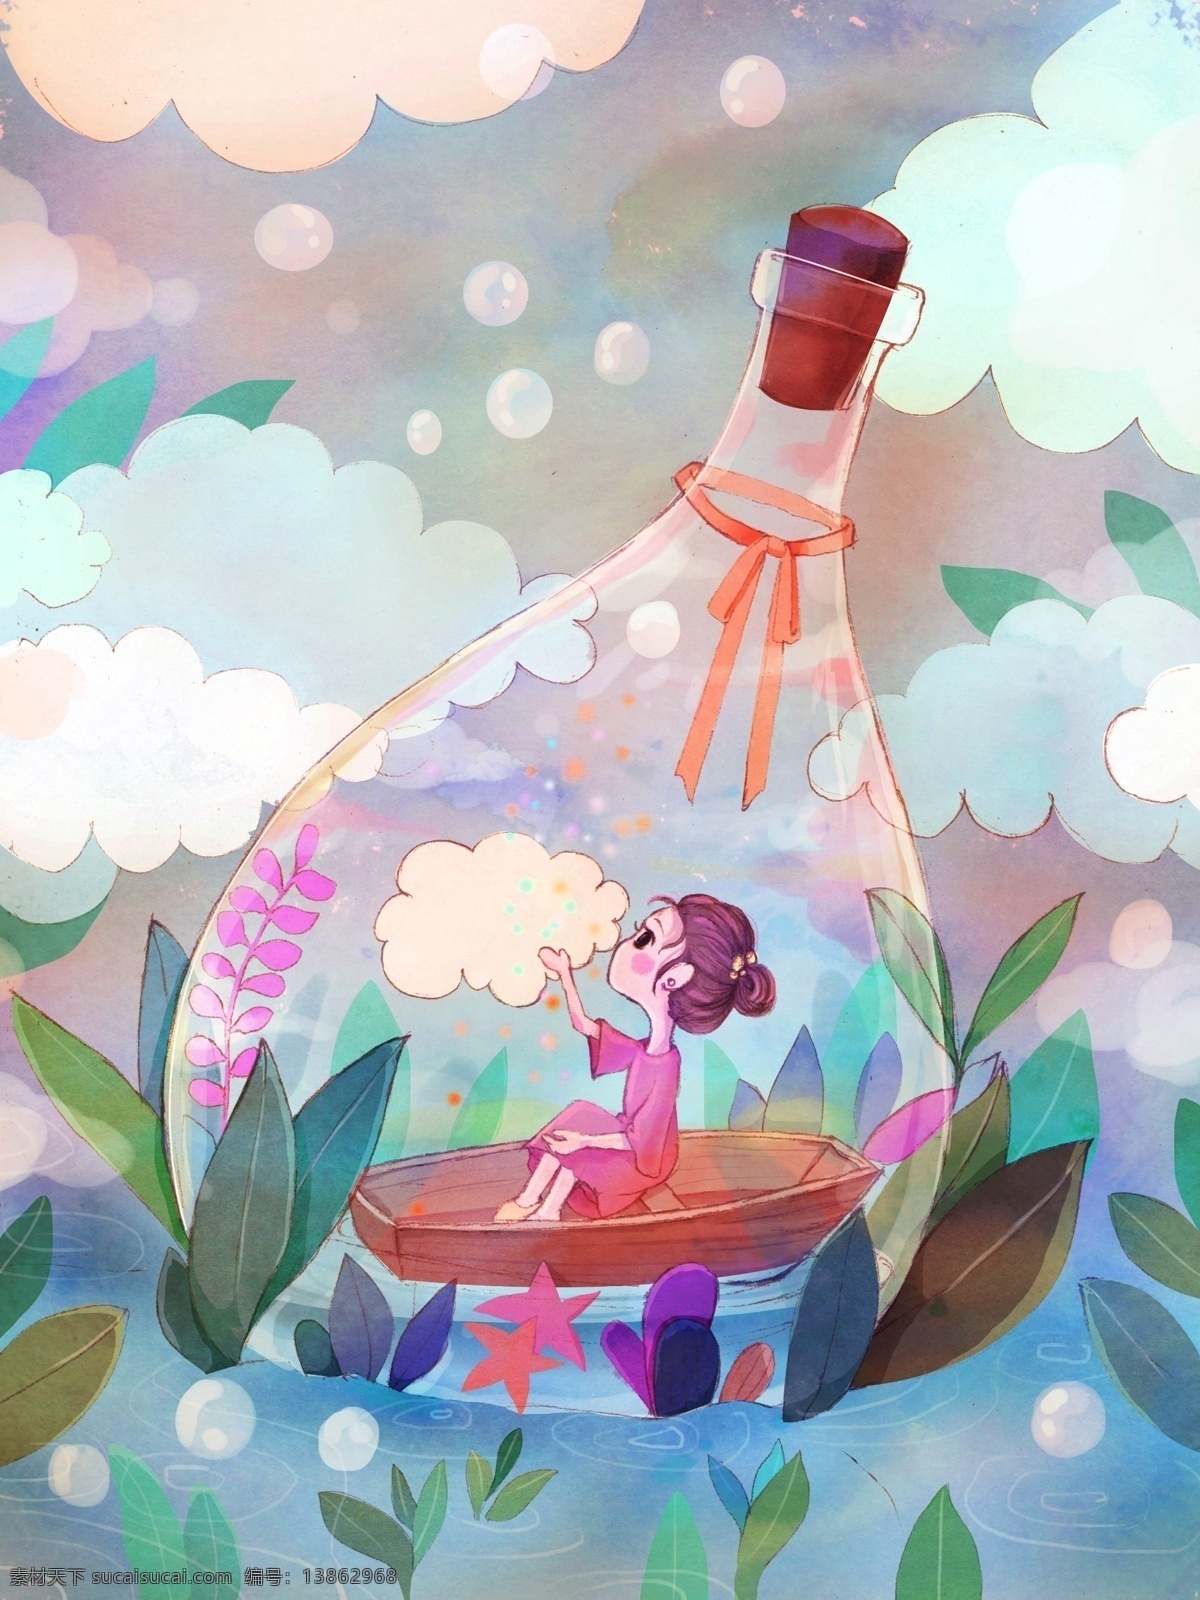 原创 女孩 漂流 瓶 插画 天空 气泡 船 壁纸 植物 漂流瓶 水面 云层 小清新插画